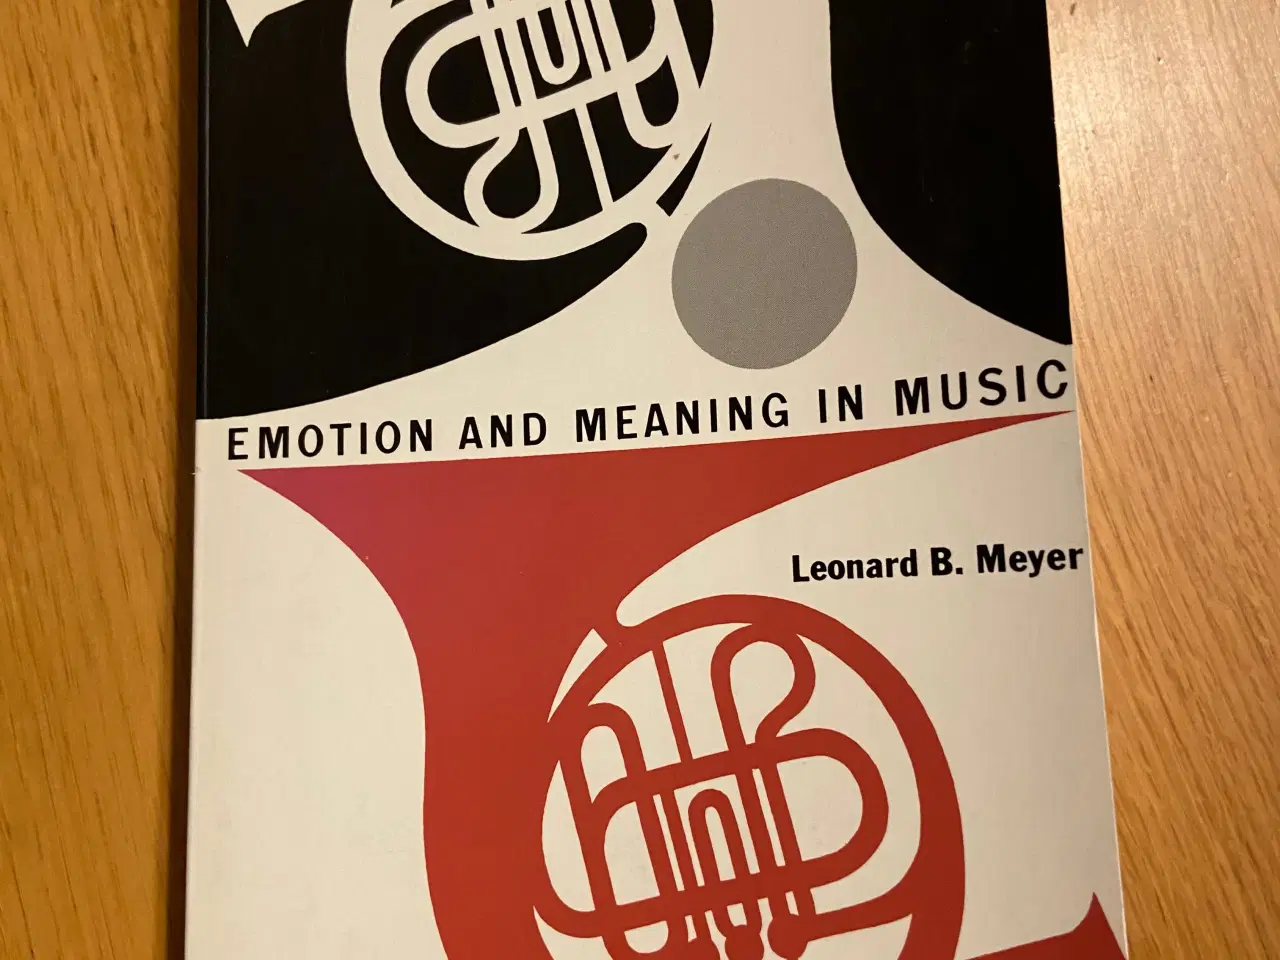 Billede 1 - Emotion and meaning in music sælges superbilligt